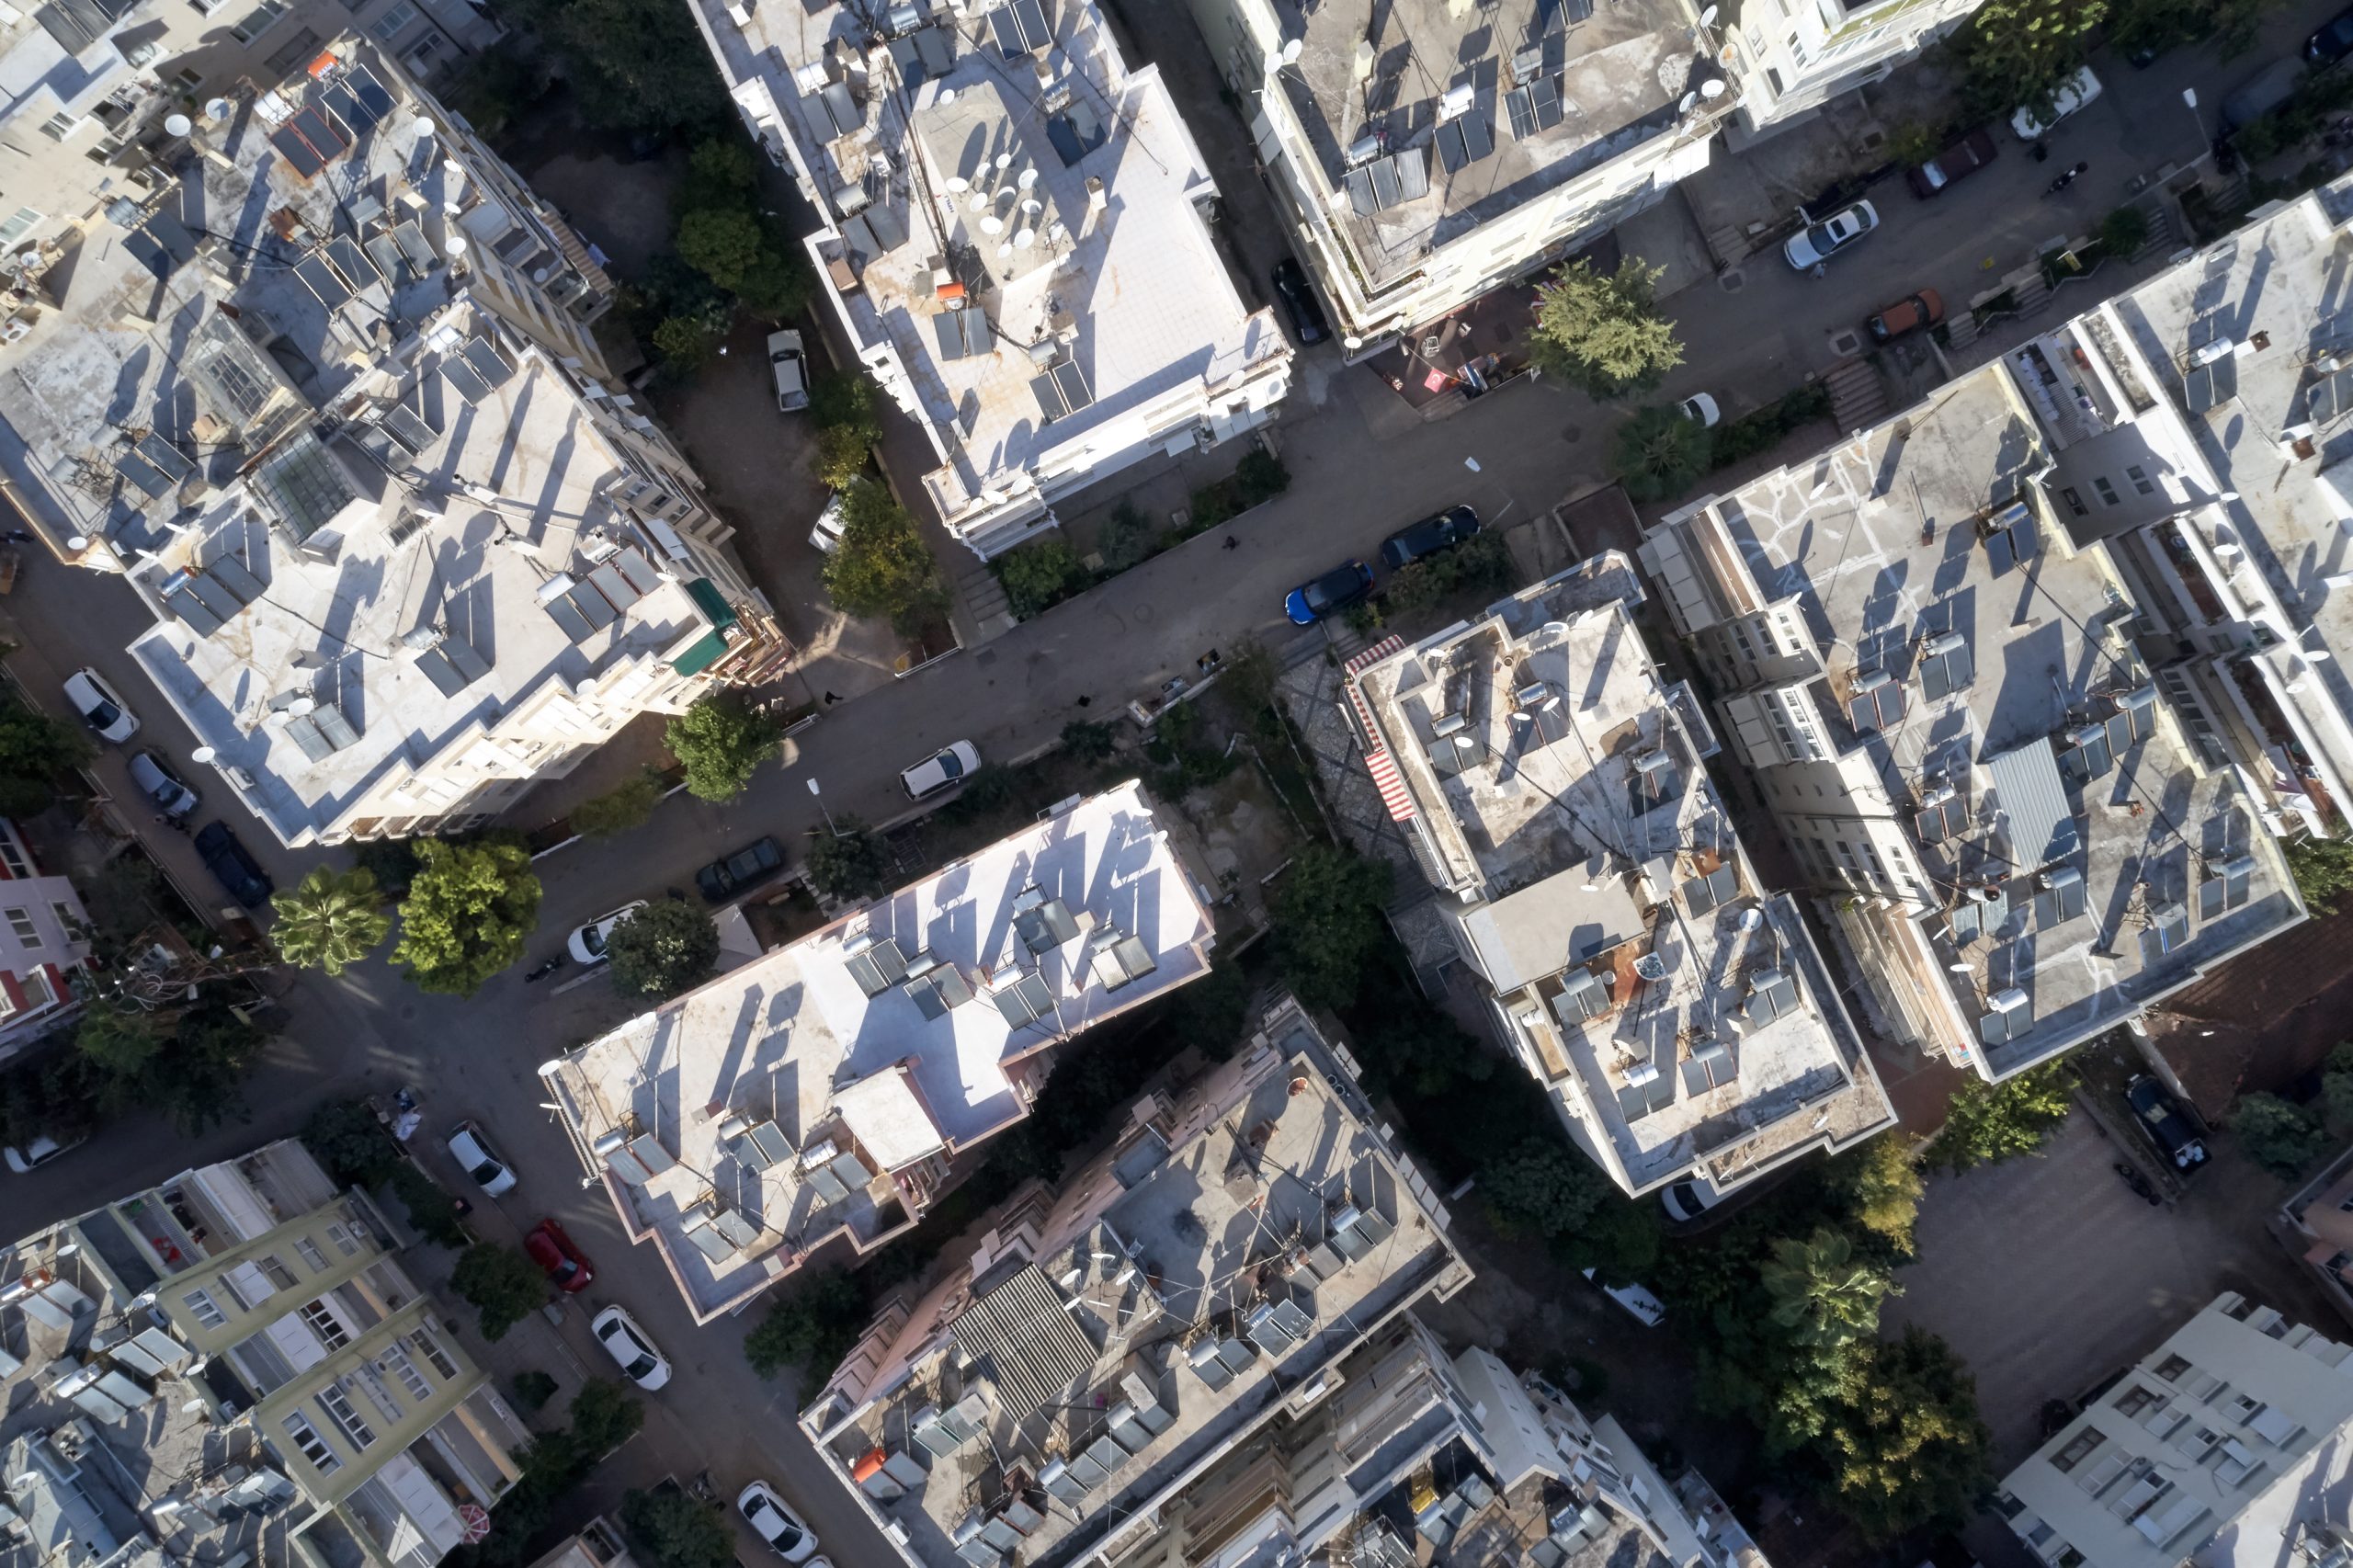 azoteas de edificios de Madrid con paneles fotovoltaicos y termicos ecosostenibles despues de realizar el Plan de rehabilitación Madrid